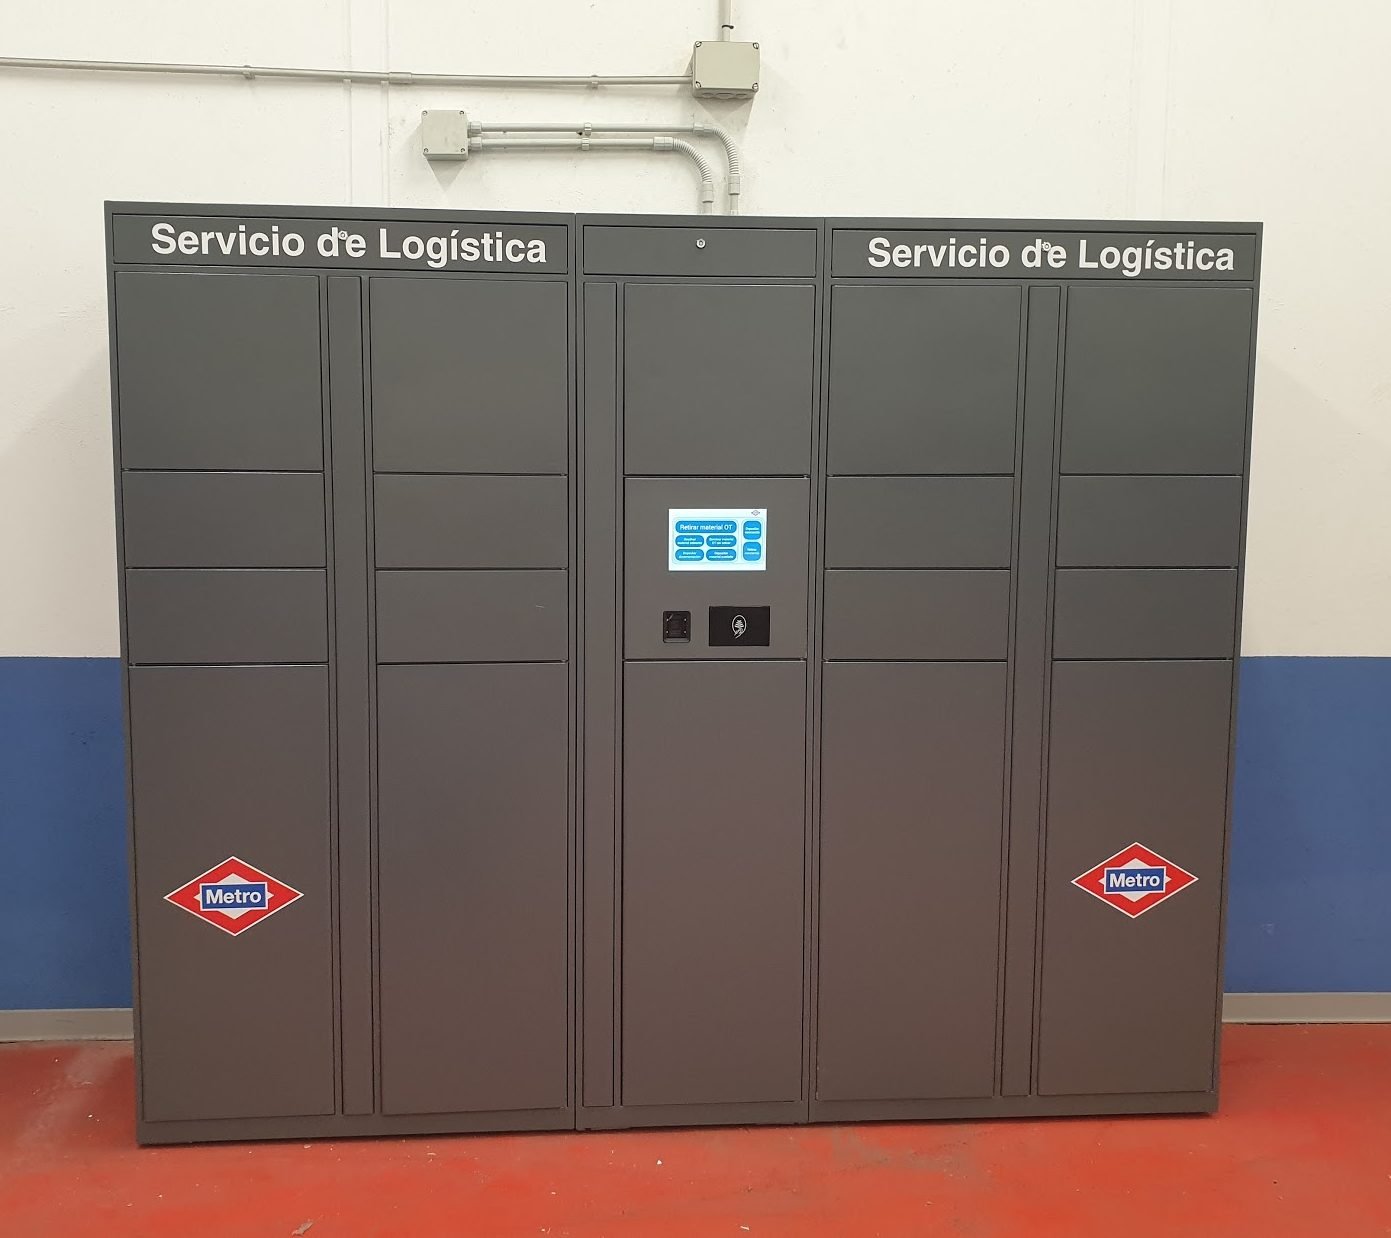 Taquilla inteligente Drop Point Systems para Servicio de Logística de Metro de Madrid